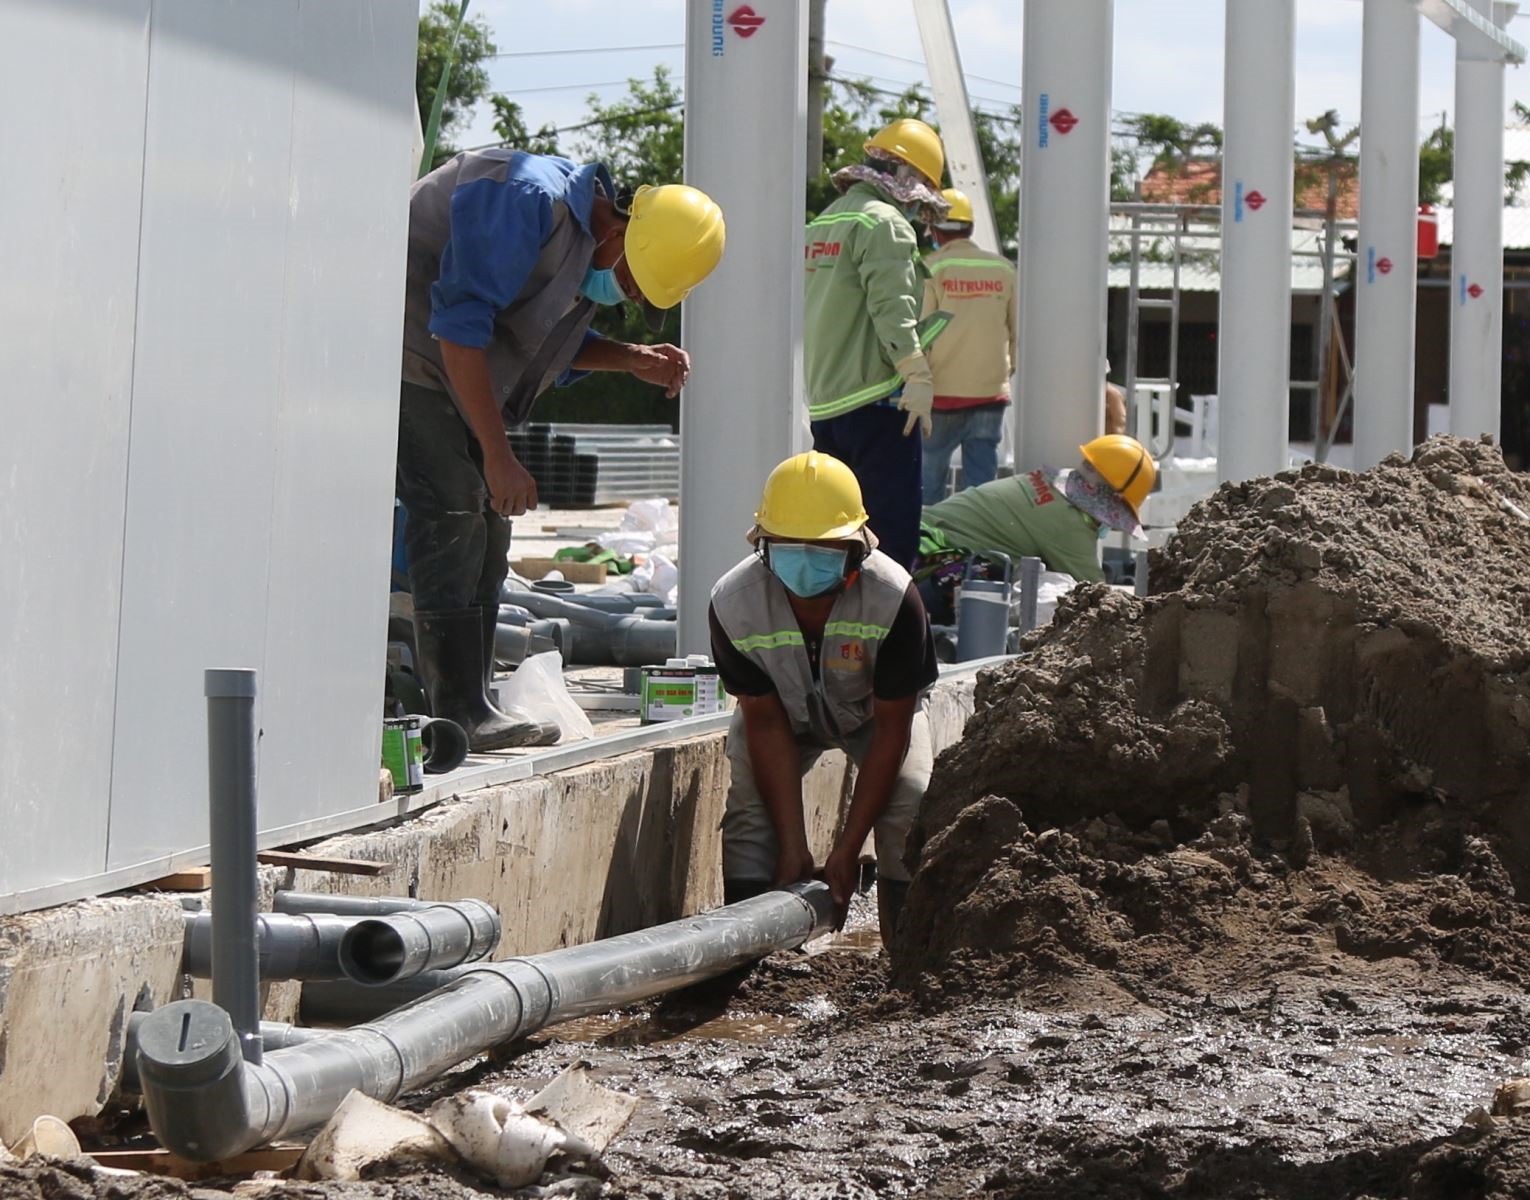 Lắp đặt hệ thống đường ống dẫn nước sạch tại bệnh viện dã chiến trên đường Nguyễn Văn Linh (TP Hồ Chí Minh). Ảnh: Trần Xuân Tình/TTXVN.